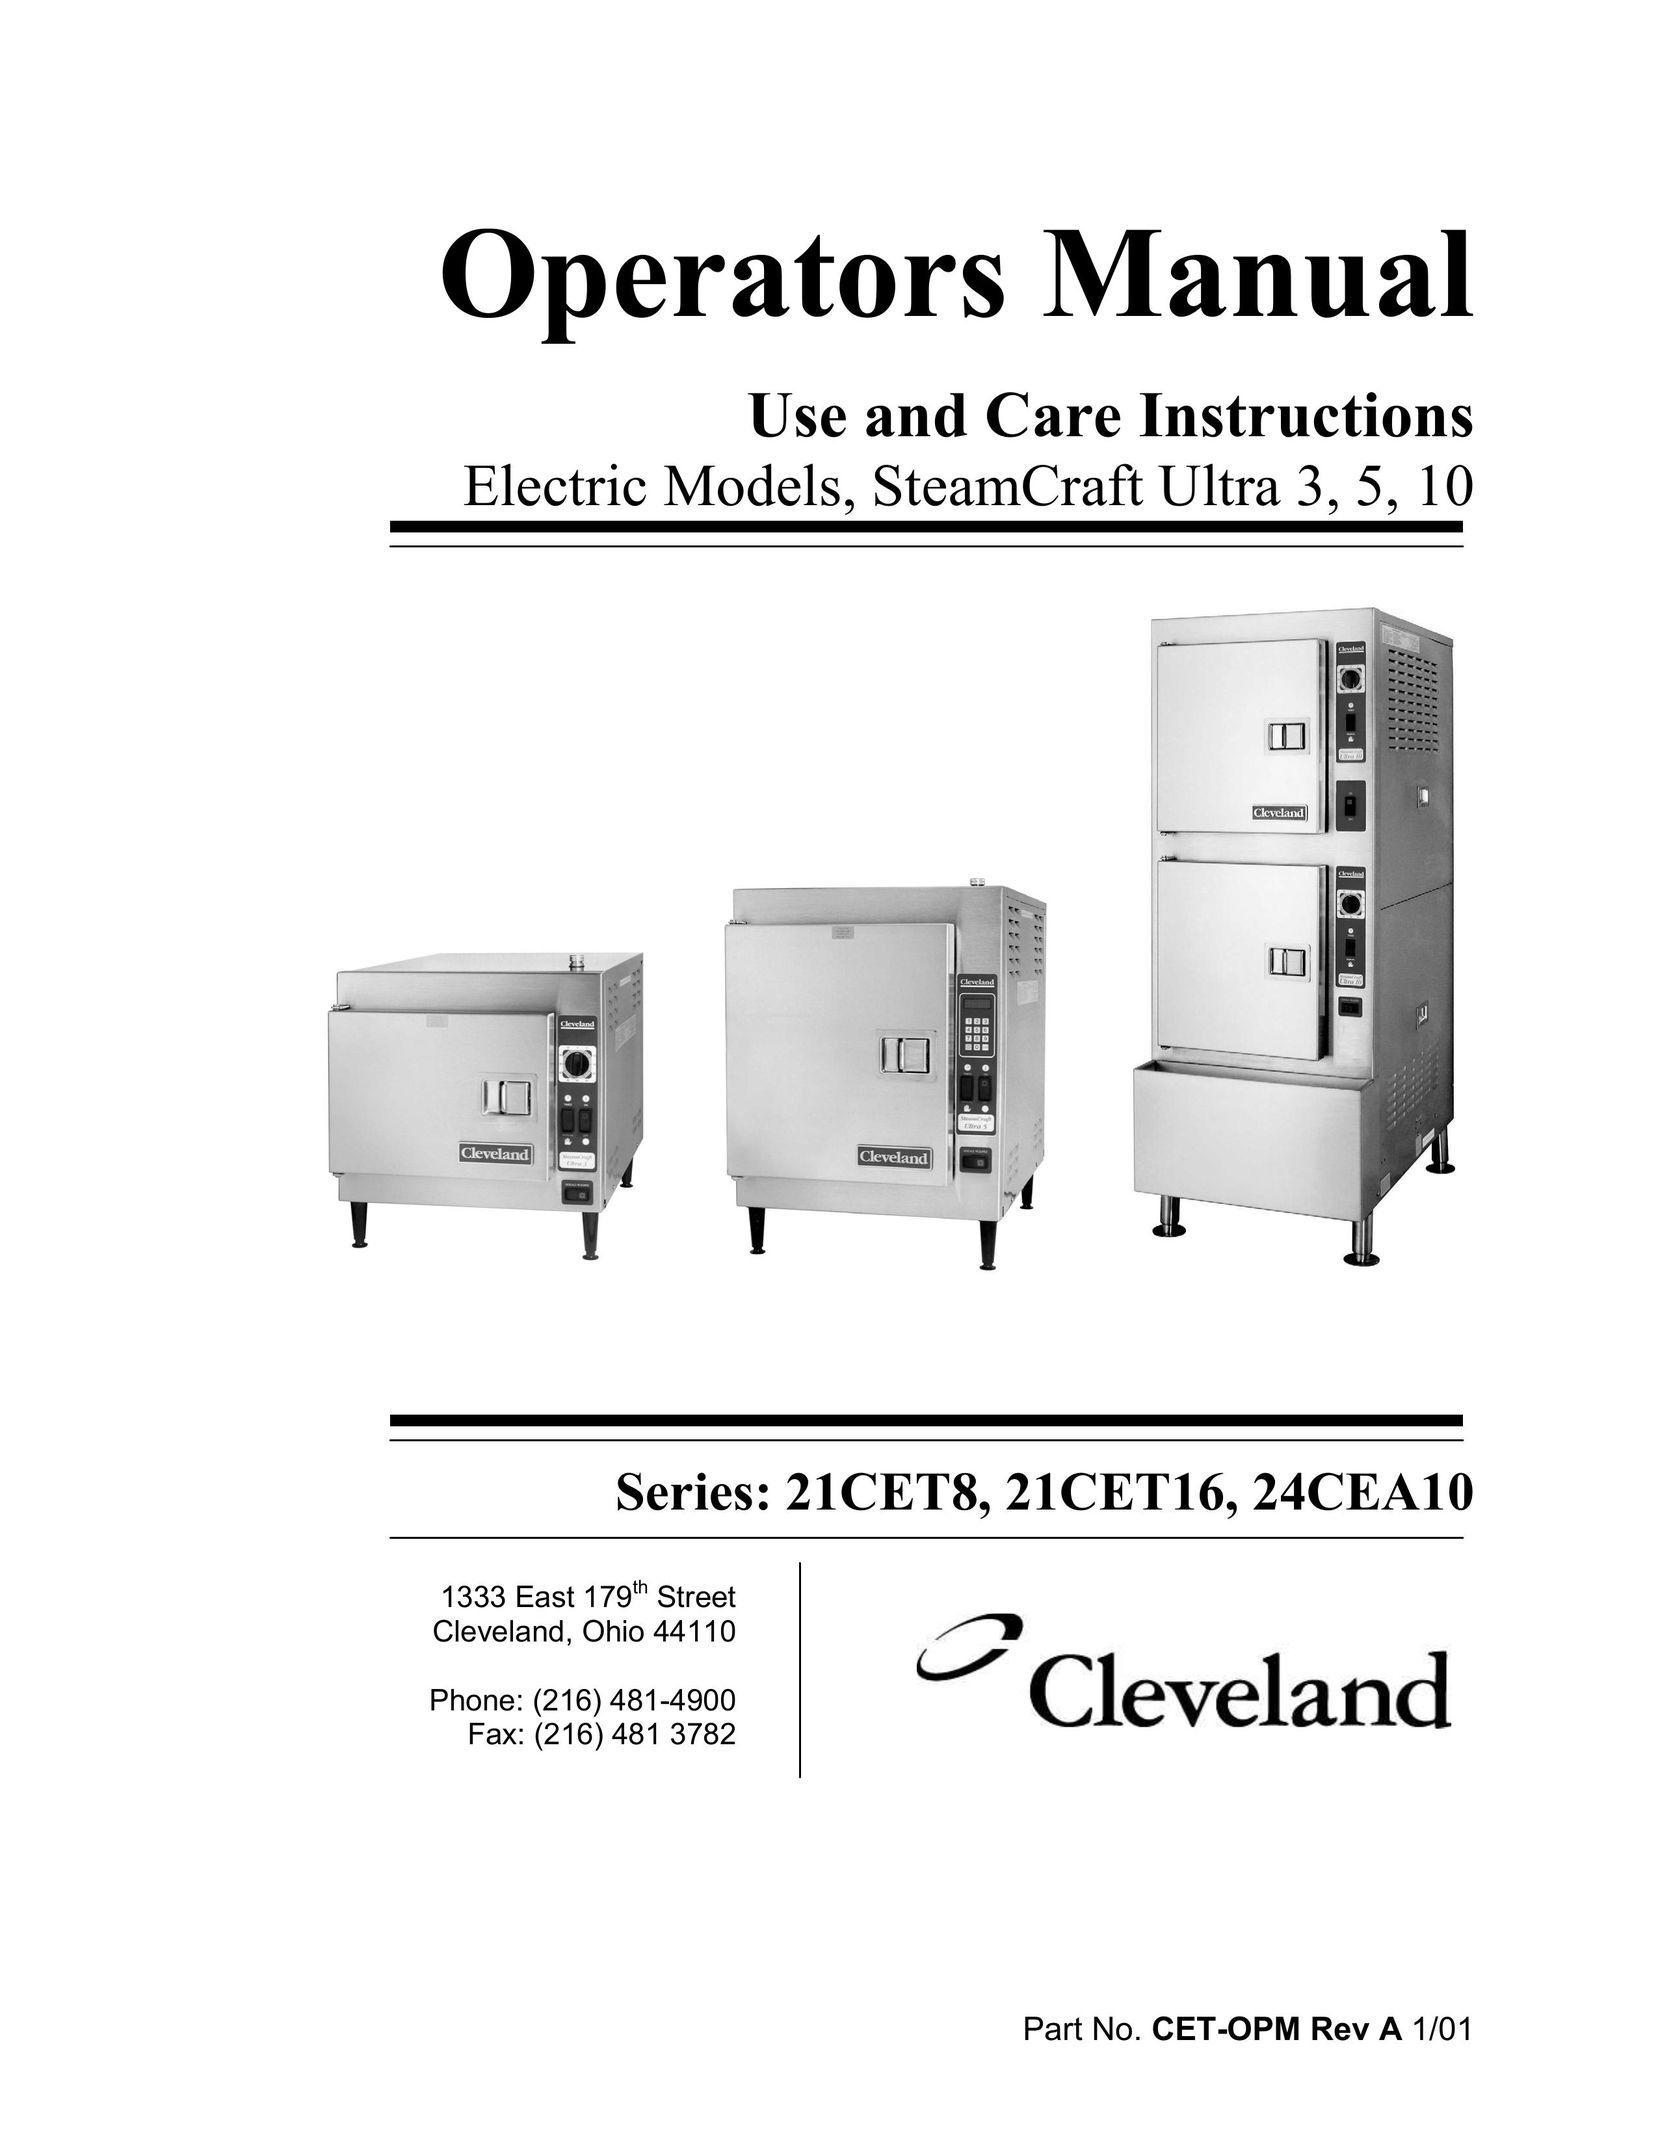 Cleveland Range 21CET16 Electric Steamer User Manual